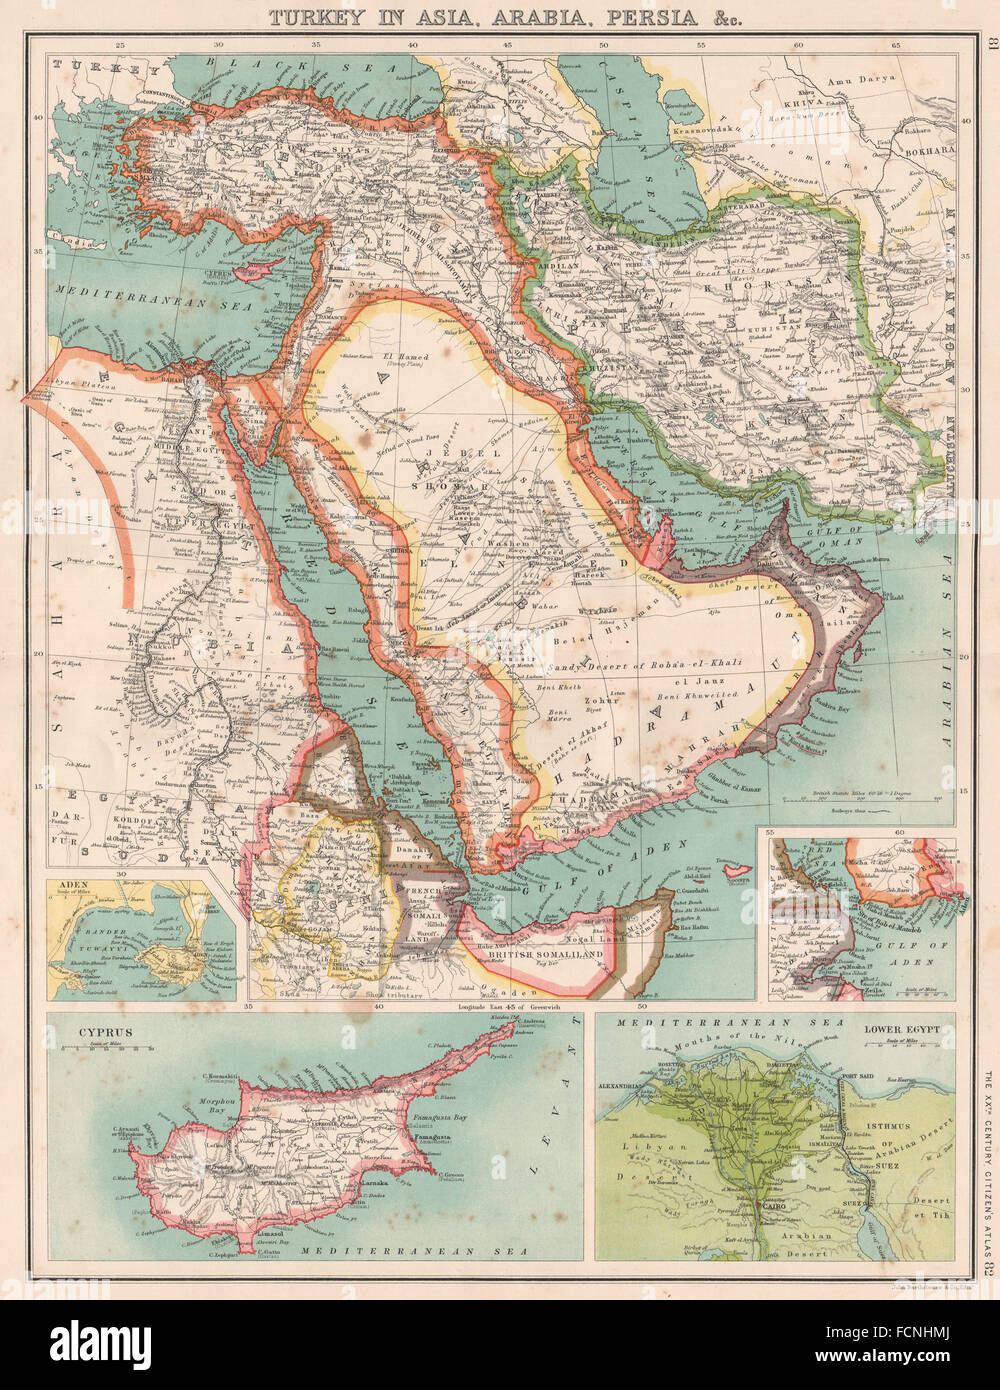 Moyen-orient:Turquie Asie Saoudite Perse(Iran)Egypte Oman.Chypre carte du Delta du Nil, 1901 Banque D'Images